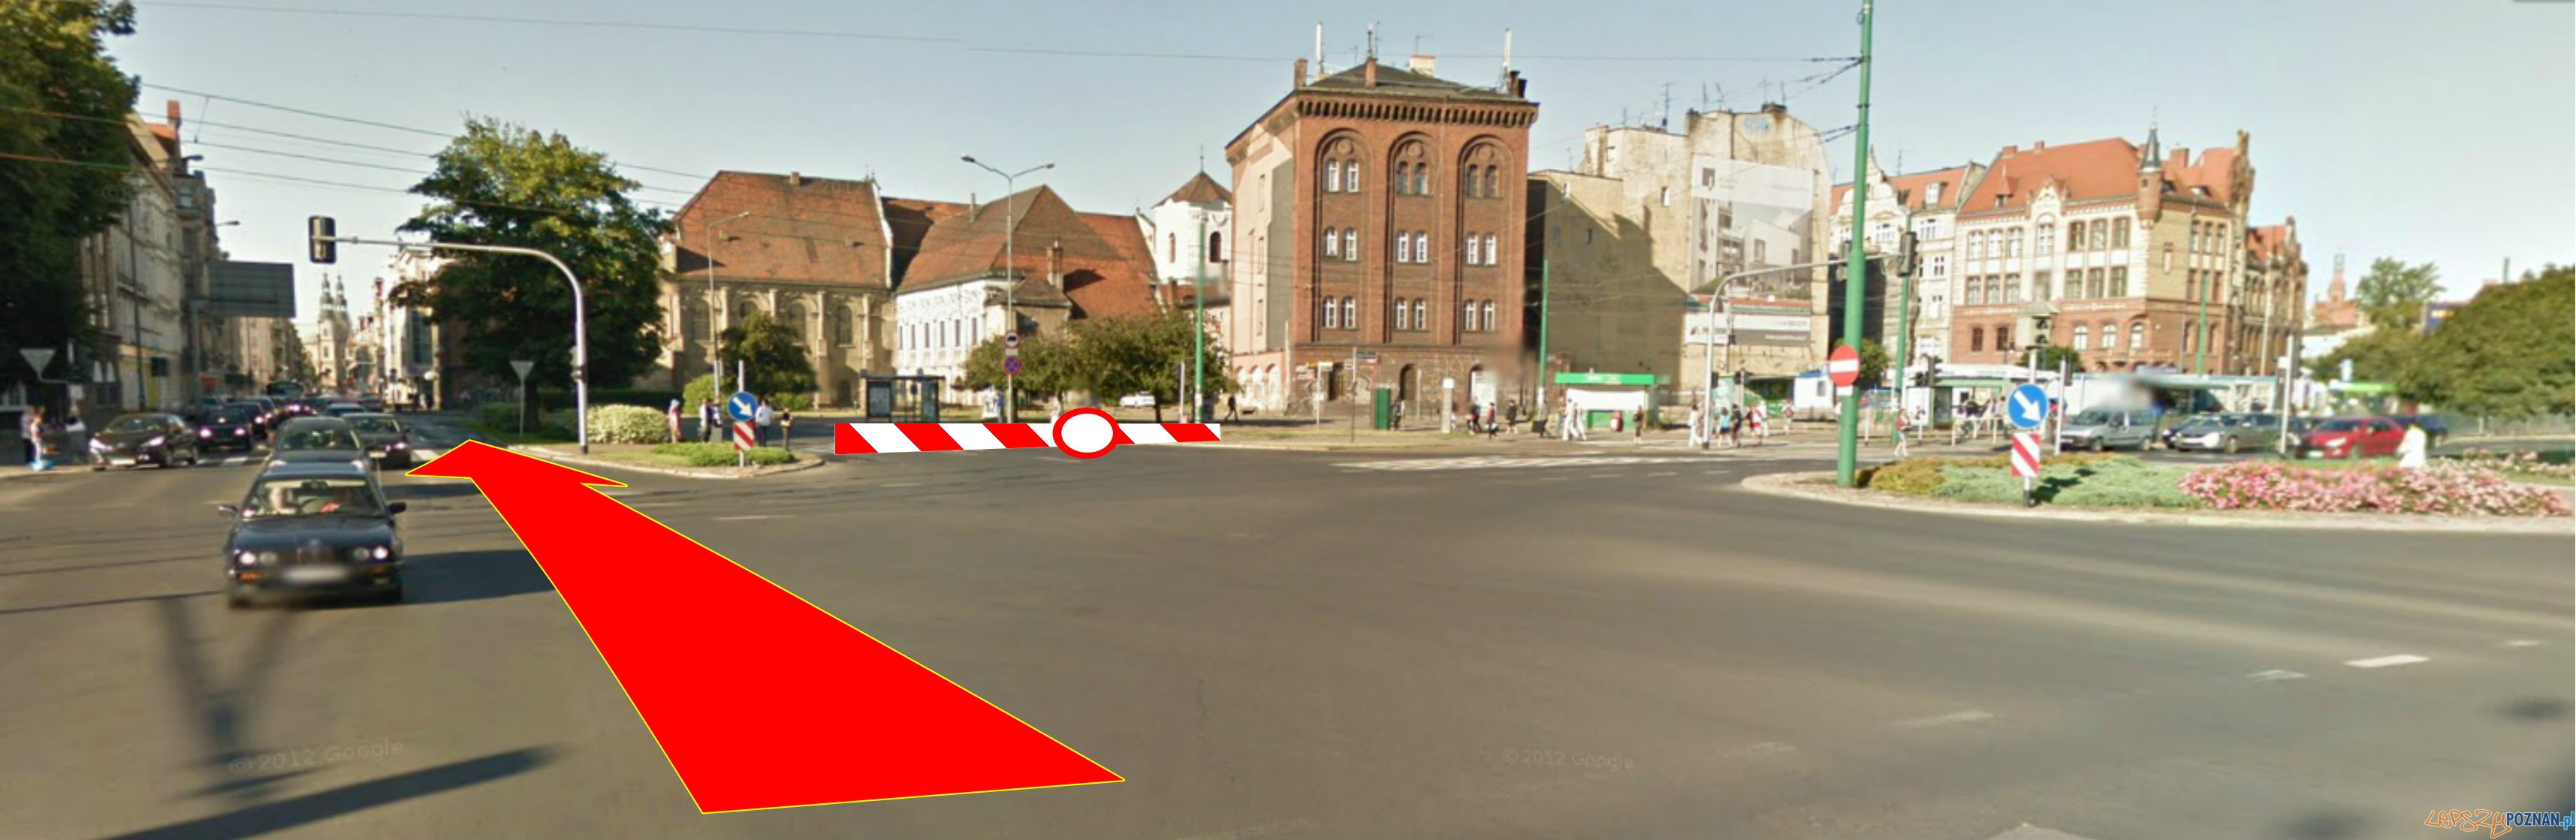 Zmiany na Garbarach  Foto: Google maps / lepszyPOZNAN.pl